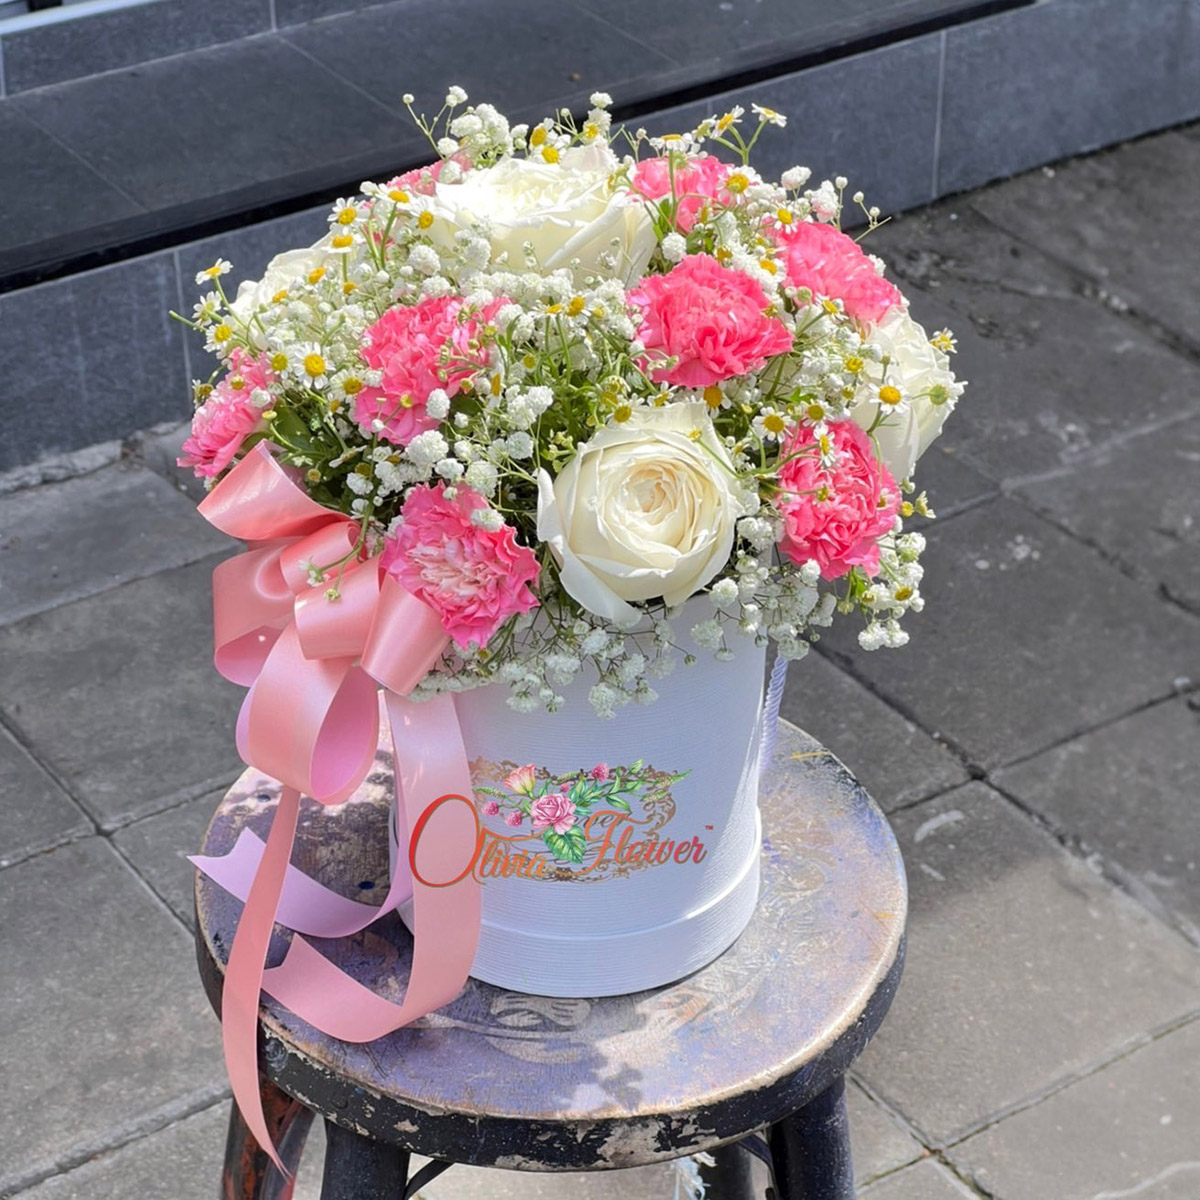 กล่องดอกไม้สด ประกอบด้วย ดอกกุหลาบสีขาว 10 ดอก ดอกคาร์เนชั่นสีชมพู 20 ดอก ดอกยิปซี และดอกเดซี่